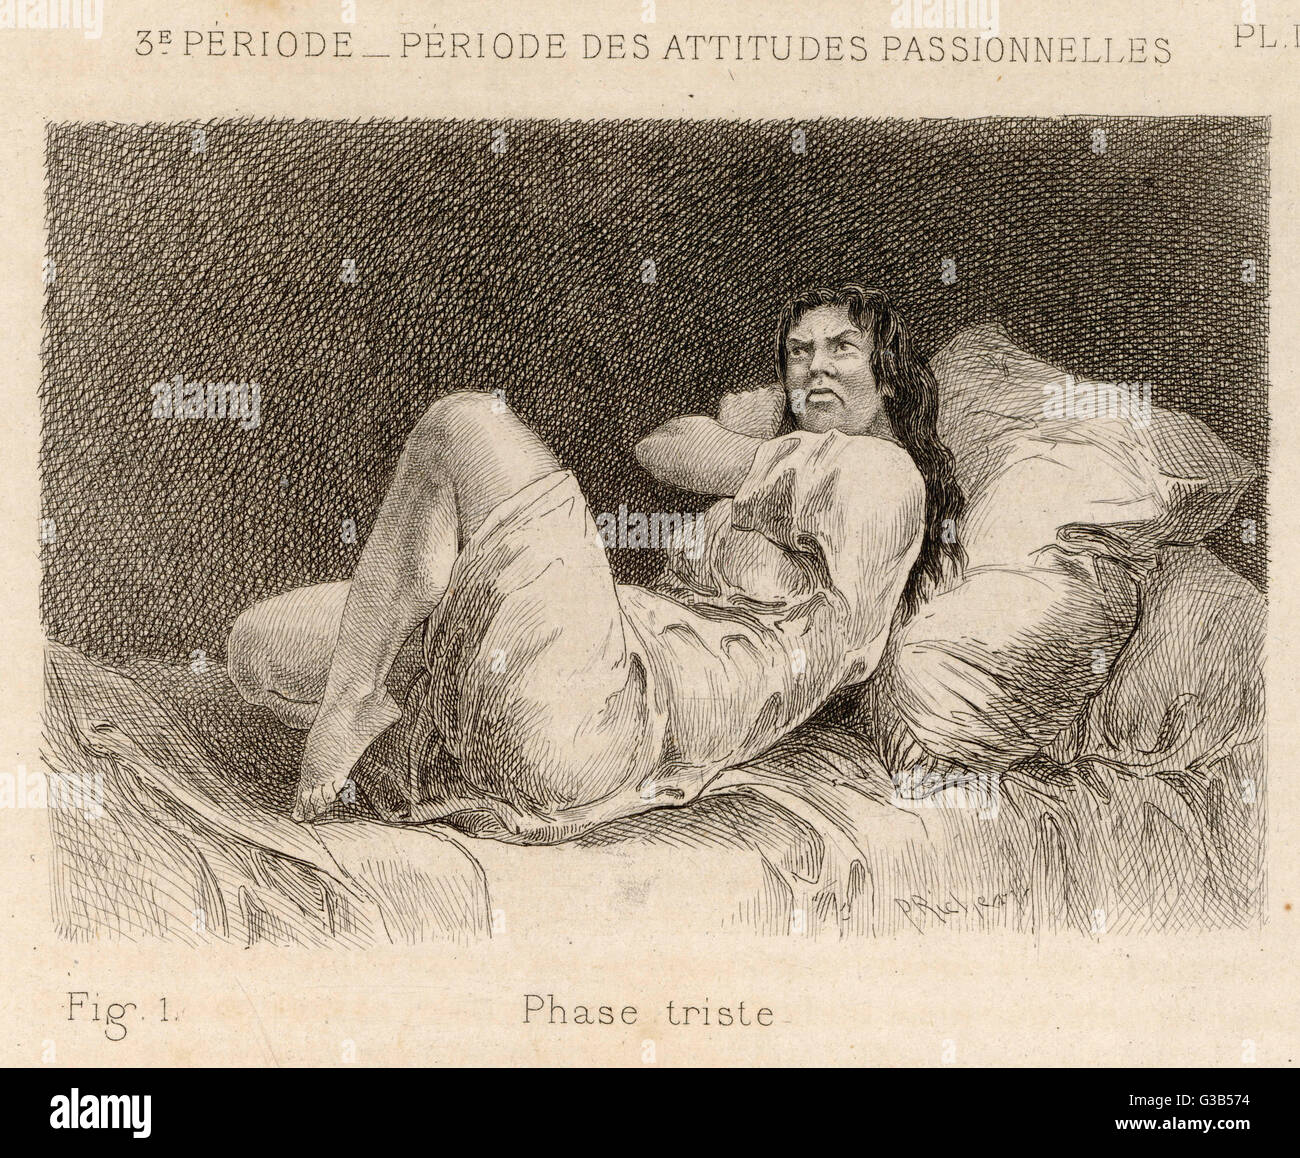 Malade mentale à la Salpetriere affichant le 'melancholy phase' Date : 1881 Banque D'Images